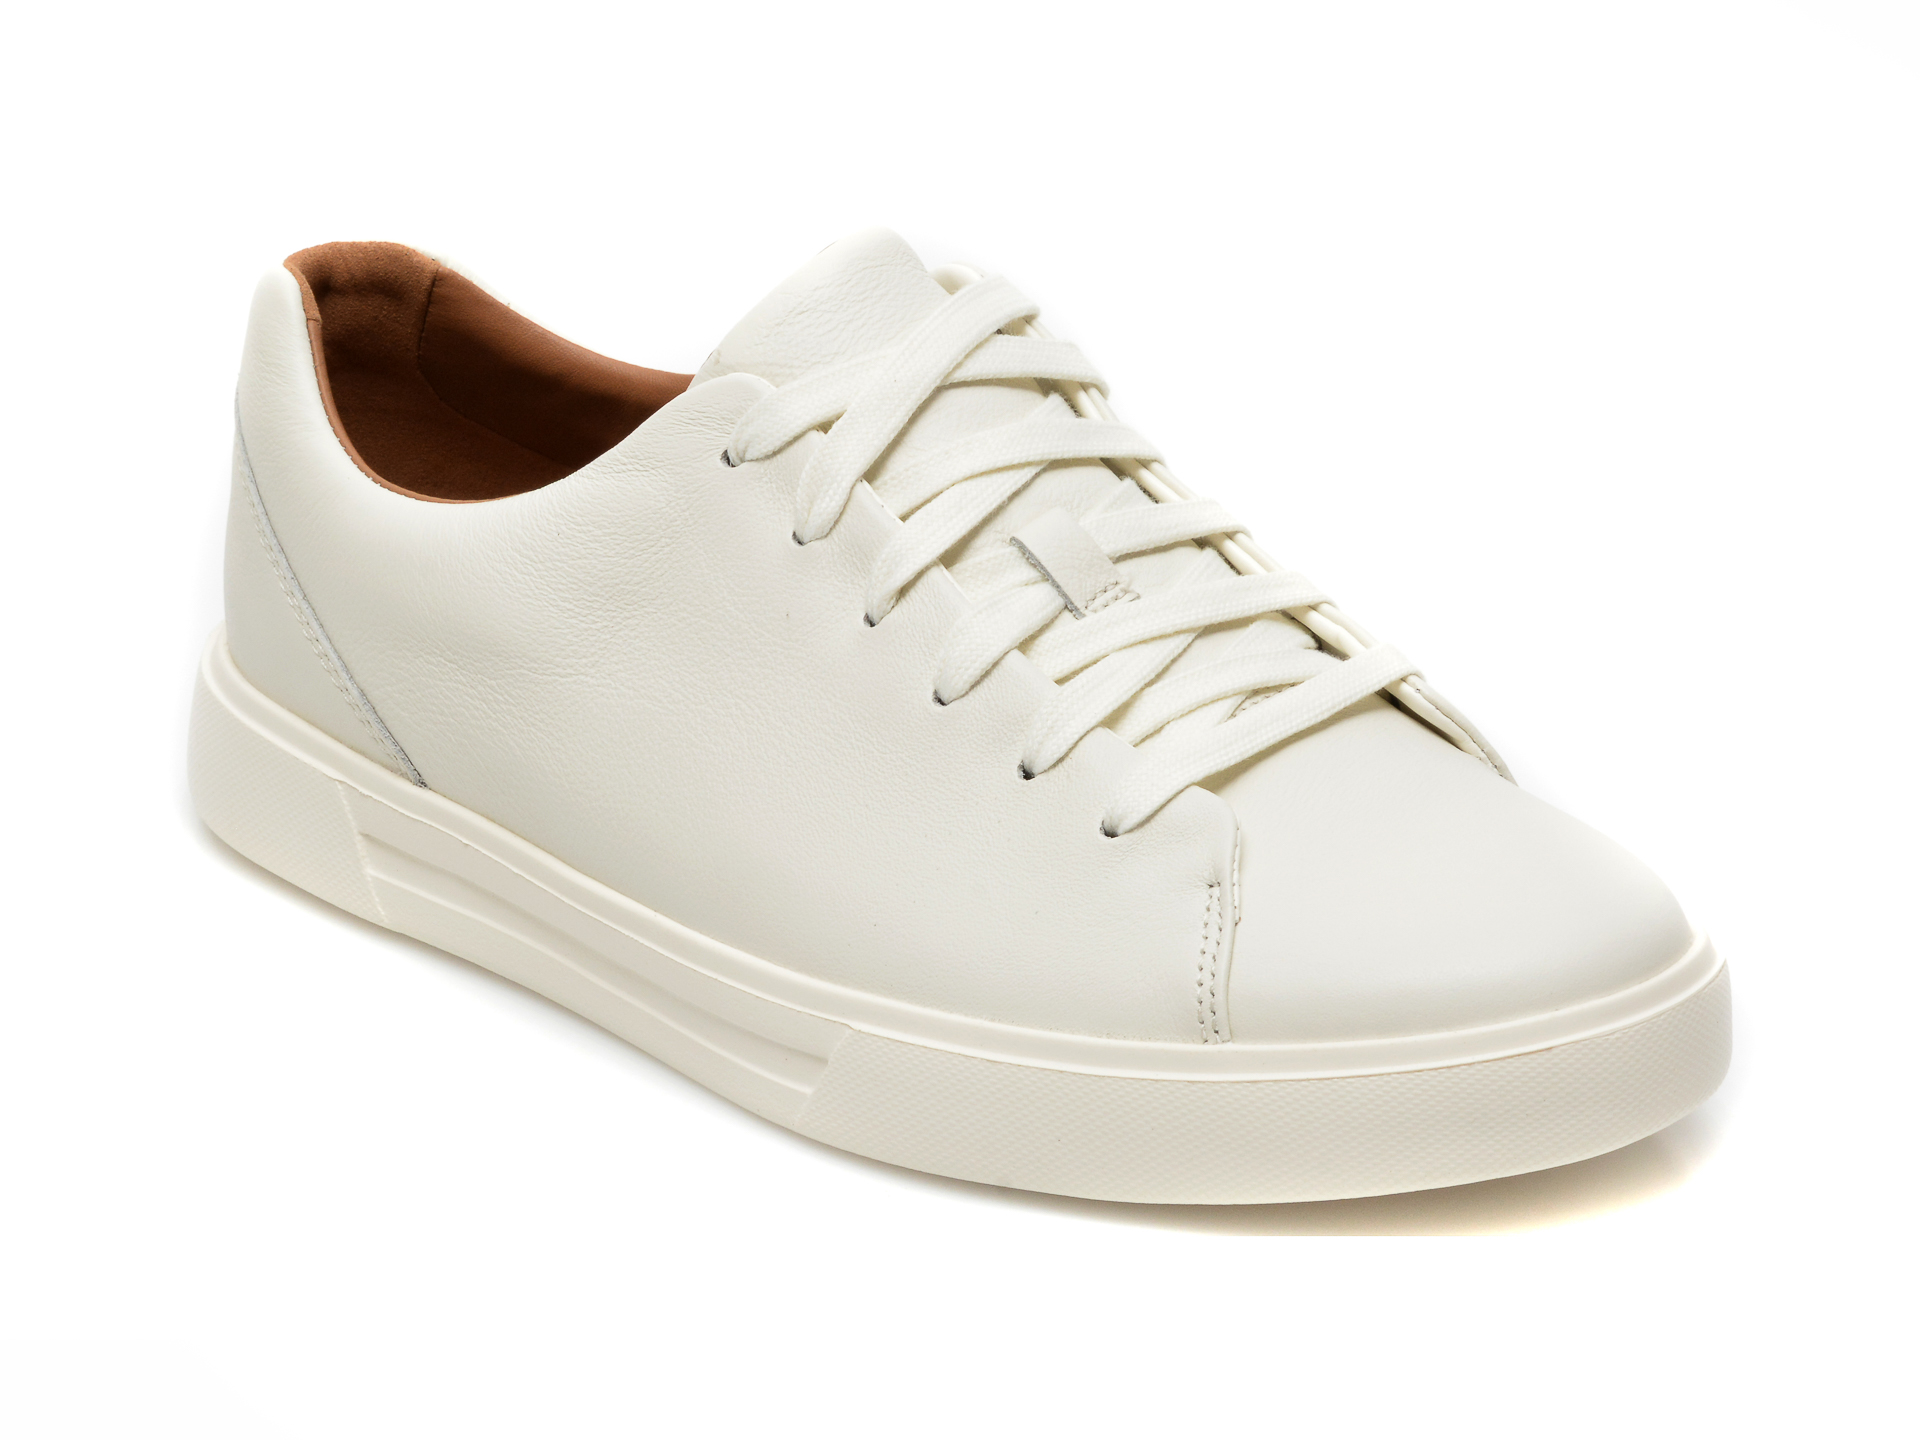 Pantofi sport CLARKS albi, UN COSTA LACE, din piele naturala Clarks imagine 2022 reducere